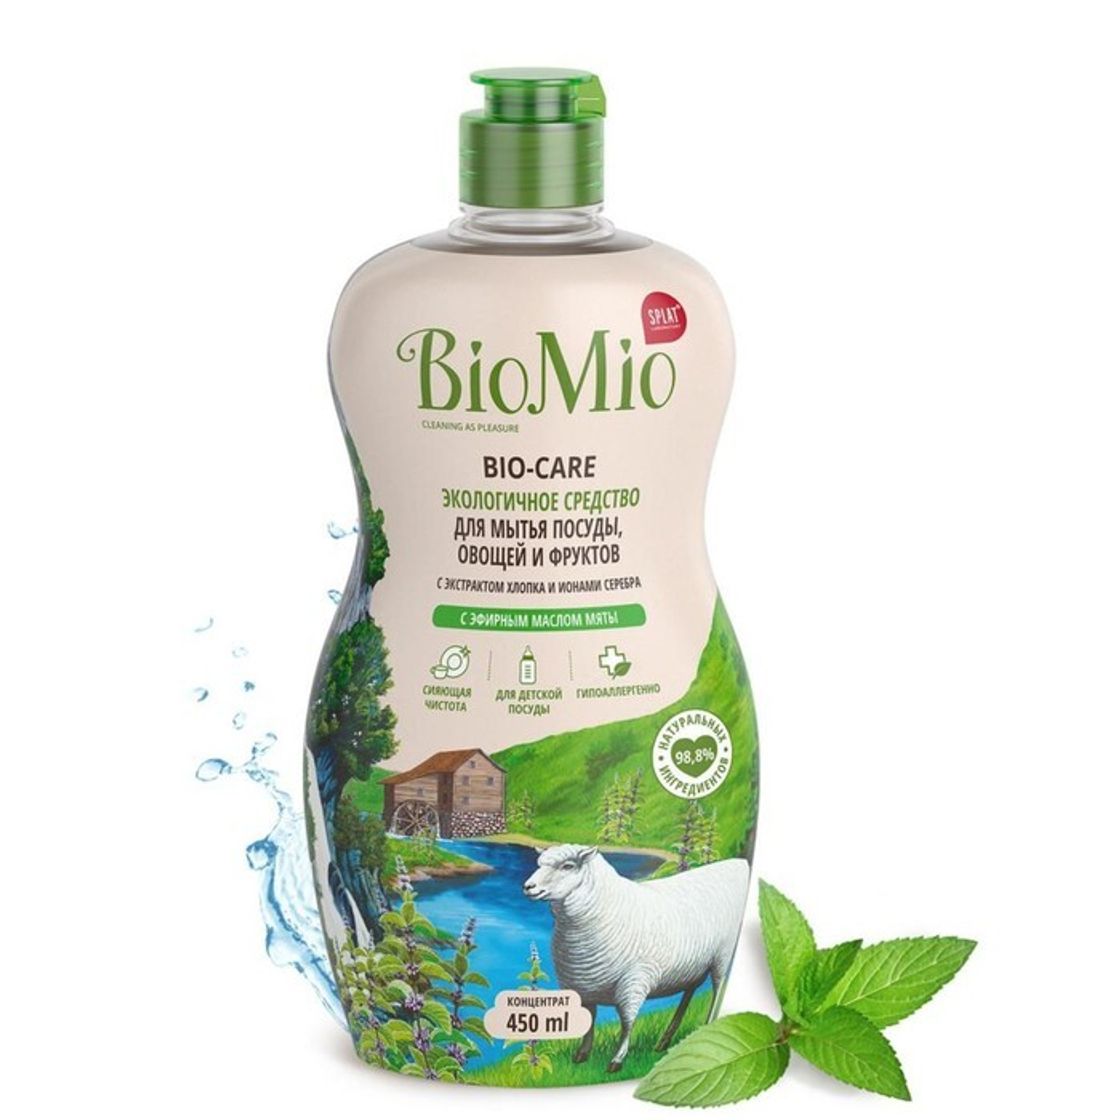 Biomio для мытья. Bio mio для мытья посуды. Средство для посуды био. Био Мио детское мыло. Средство для мытья посуды Bio mio Bio Care без запаха 450.